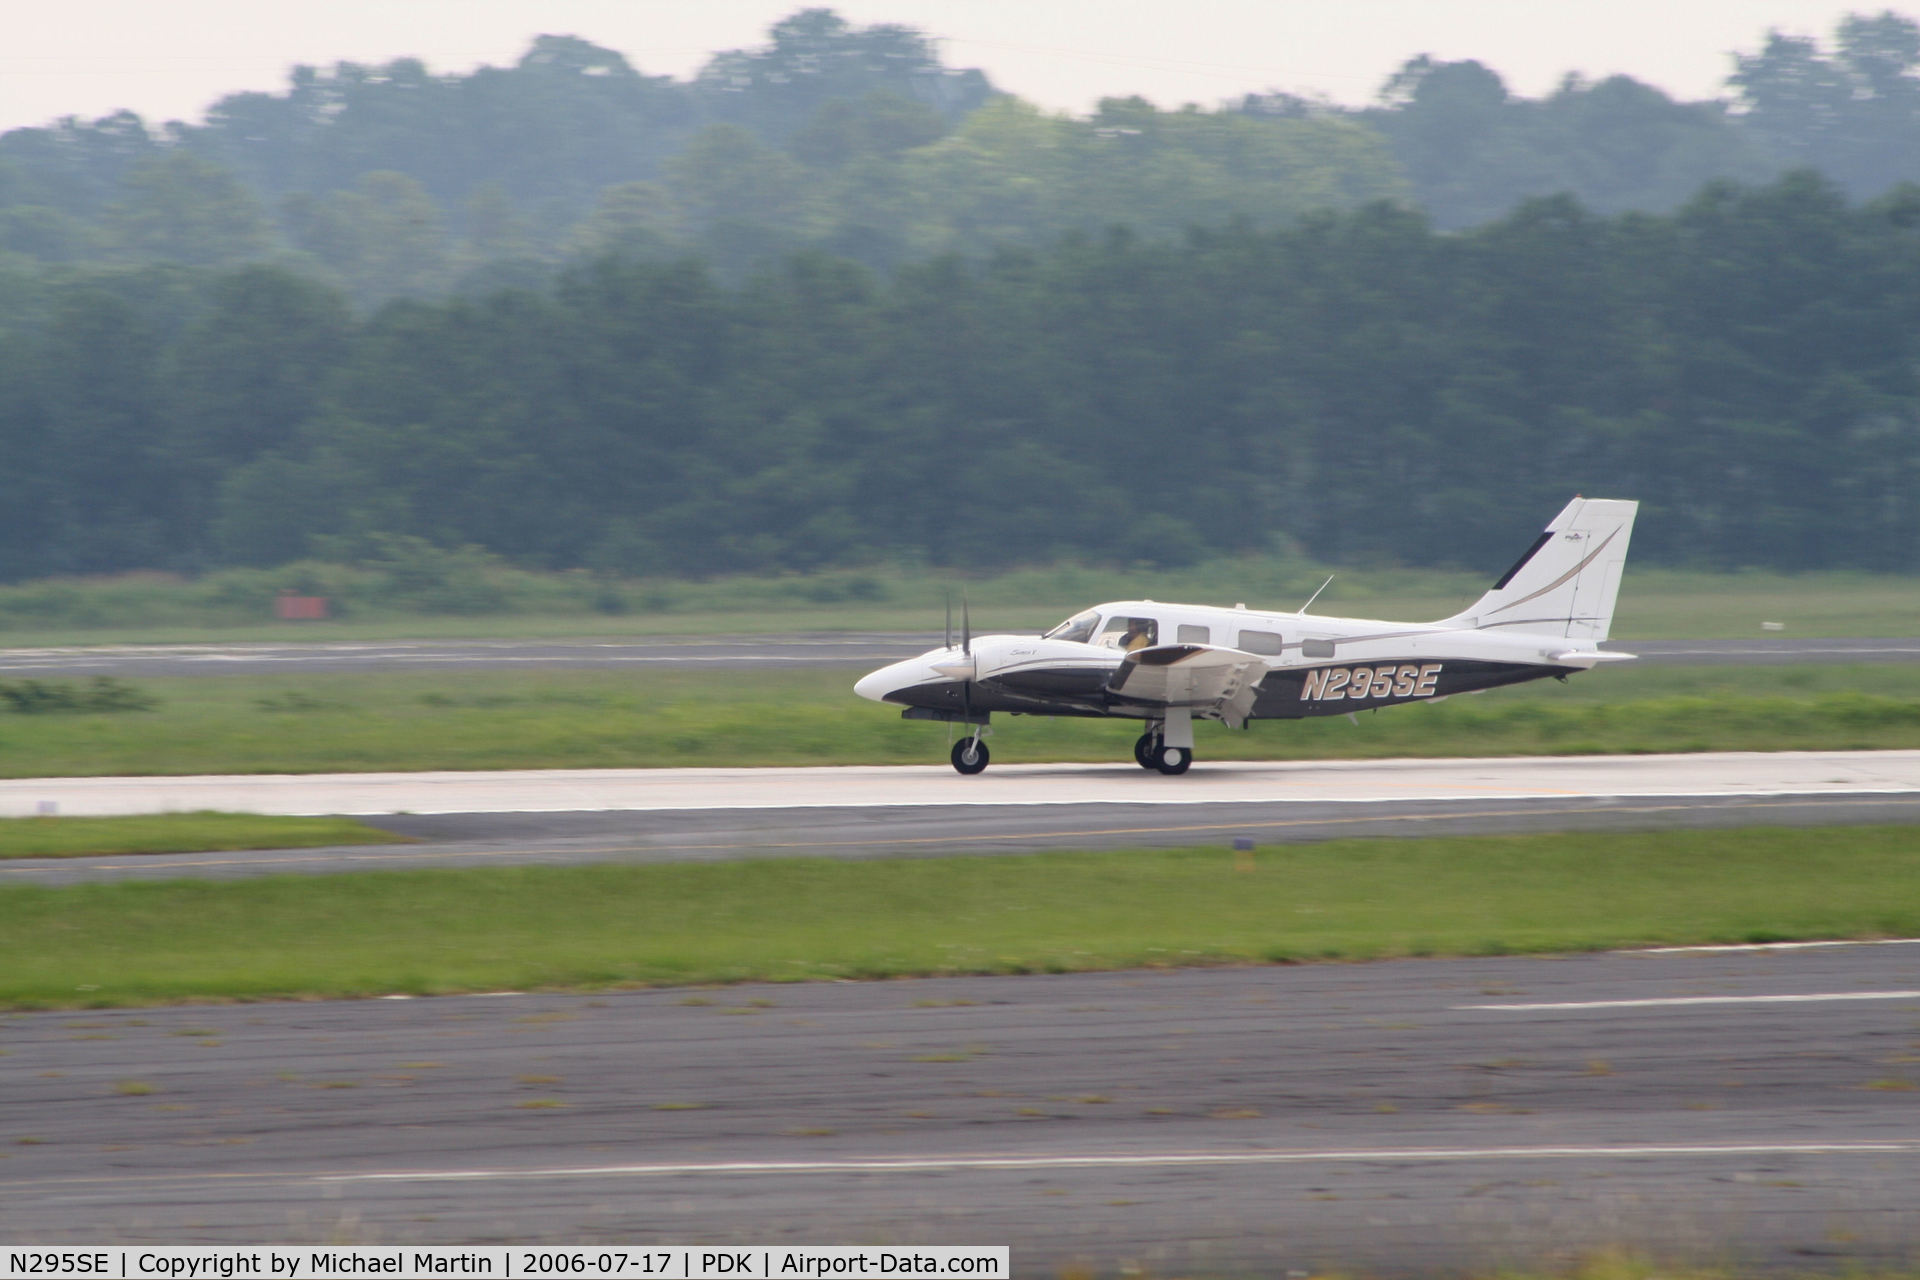 N295SE, 2003 Piper PA-34-220T Seneca C/N 3449295, Departing Runway 2R